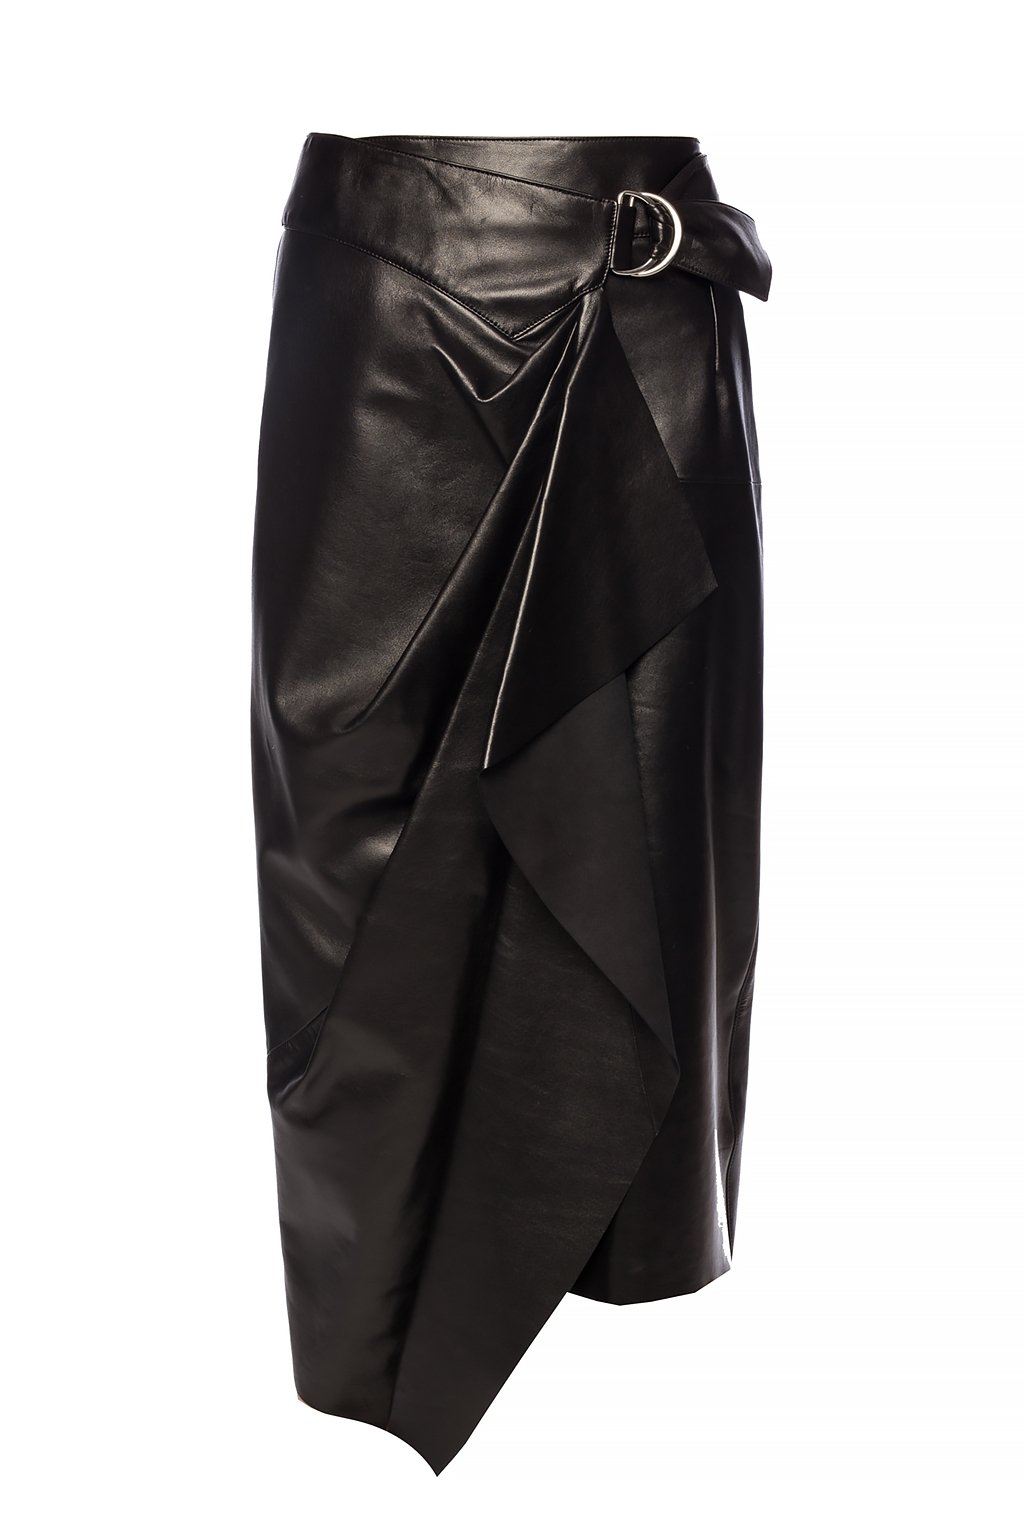 Isabel Marant Ruched leather skirt | Clothing | Vitkac